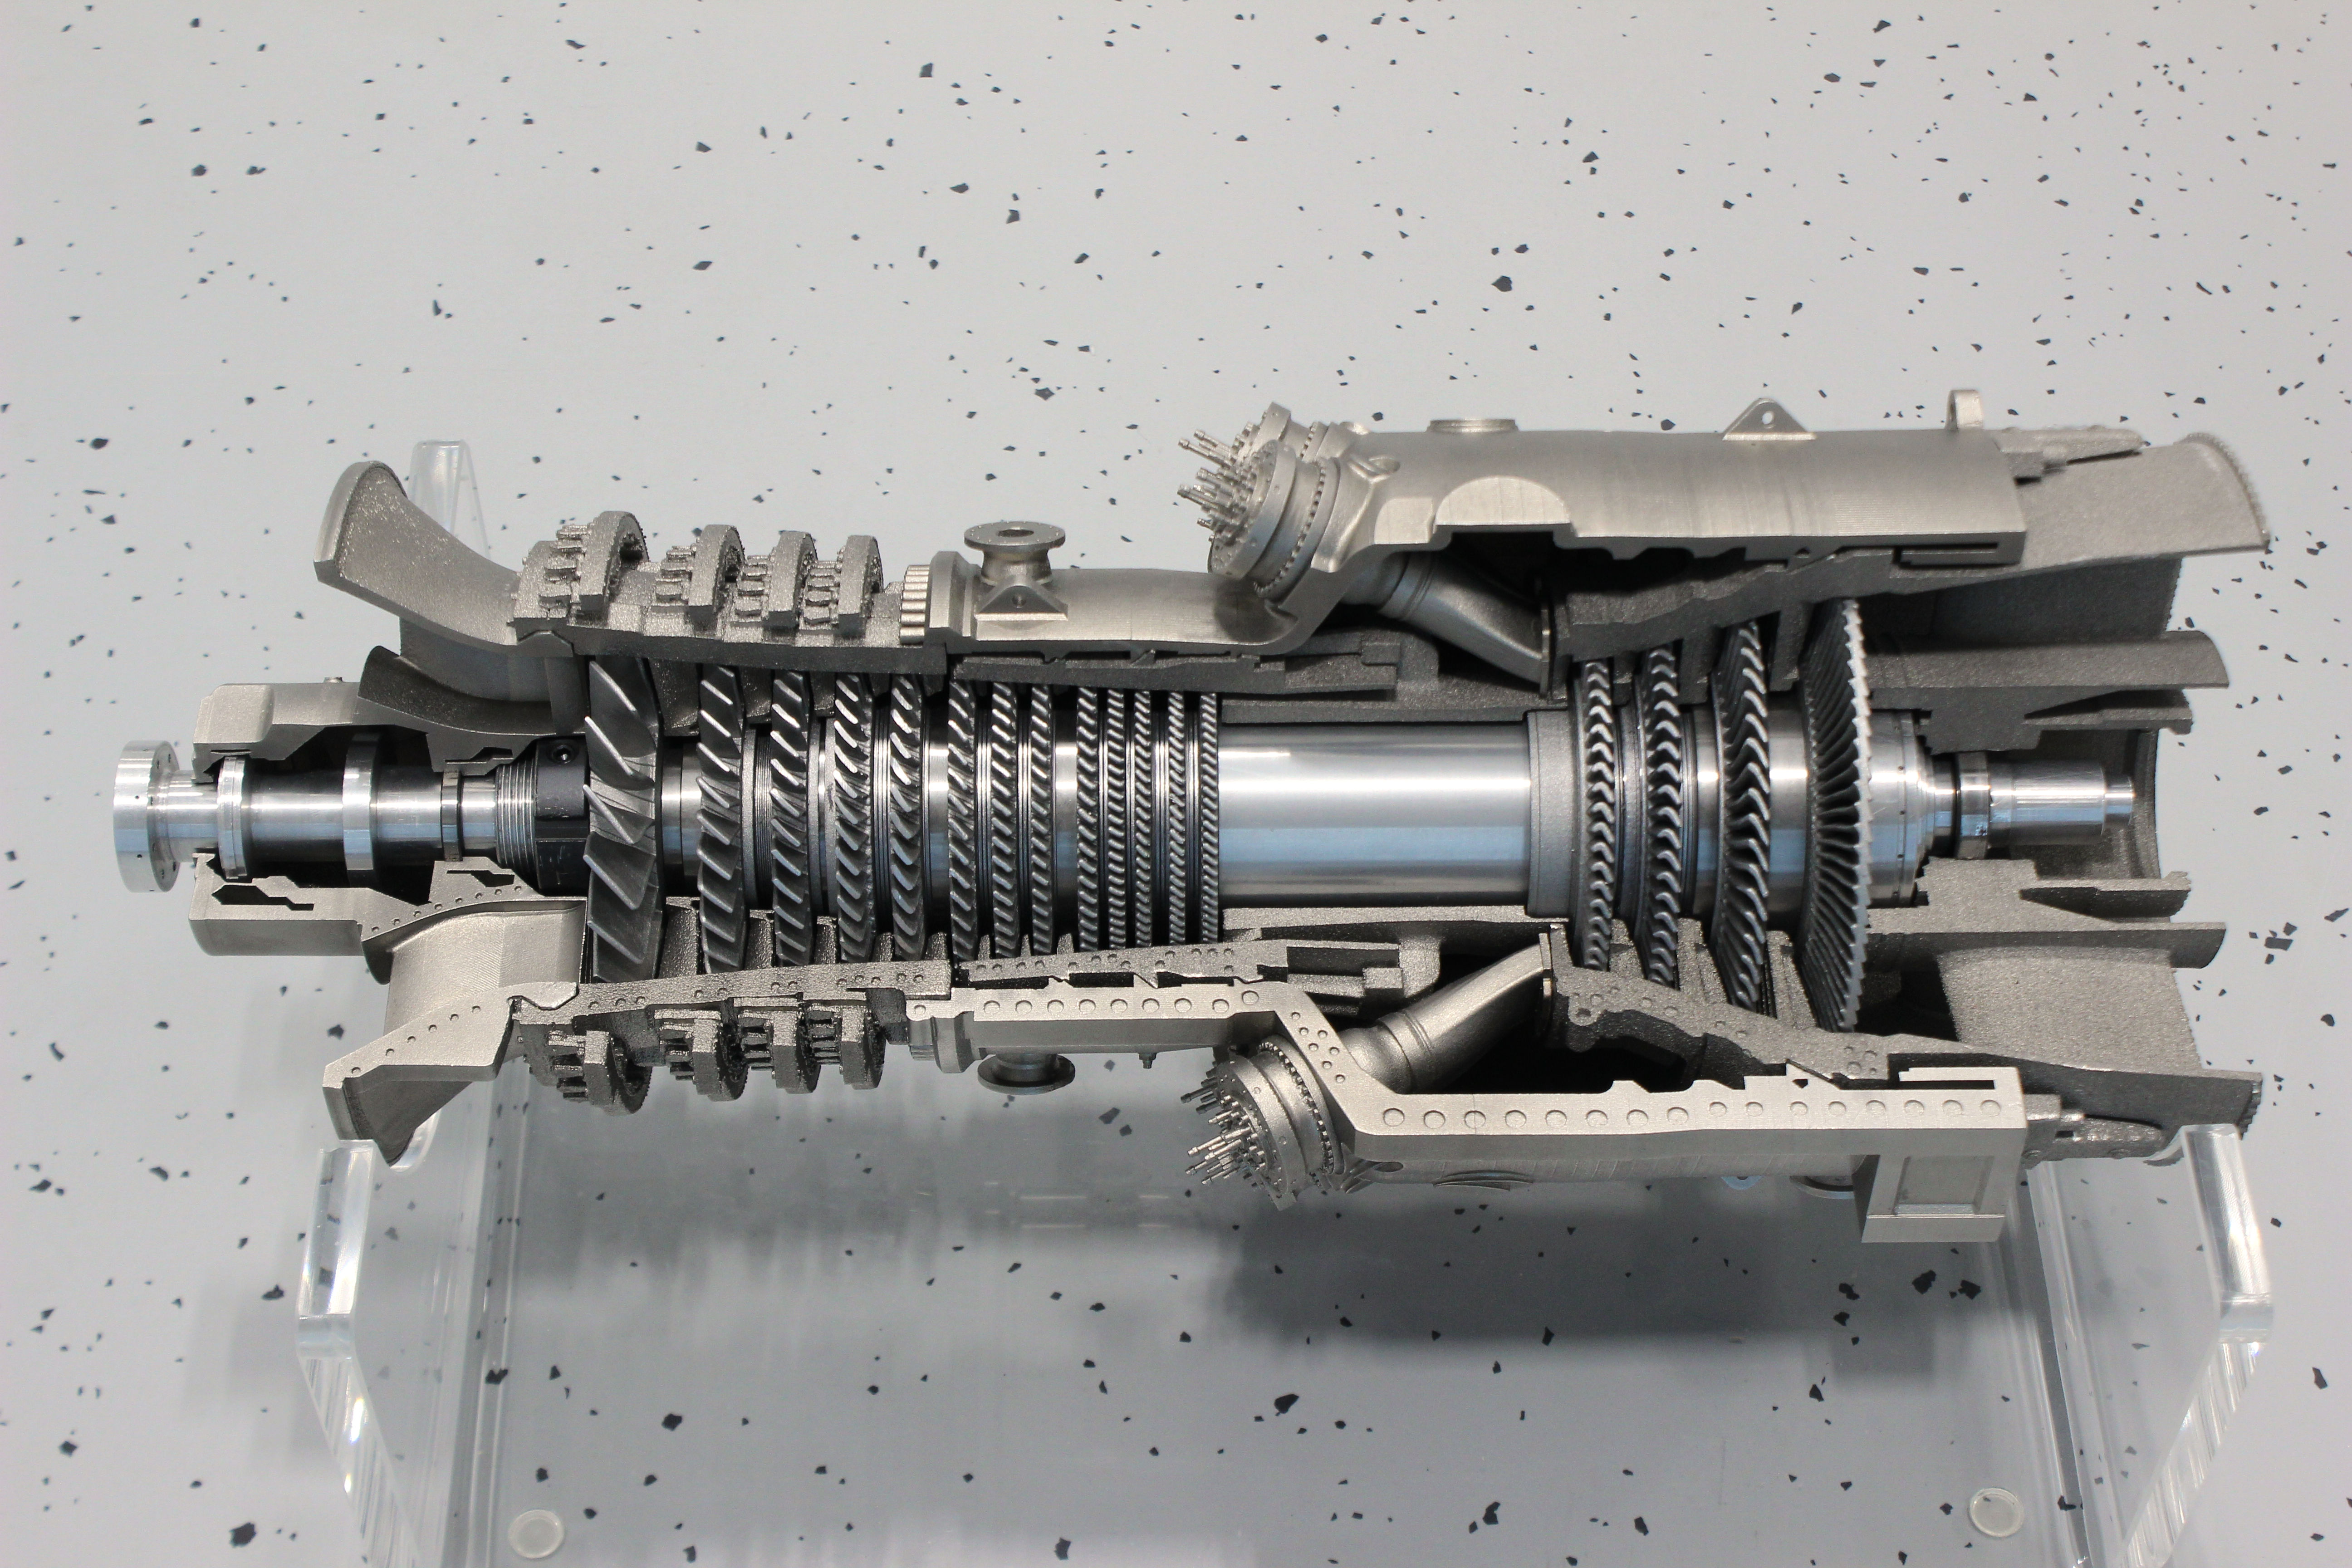 Skaliertes Modell einer Gasturbine zur Stromerzeugung; komplett mit additiven Verfahren hergestellt.